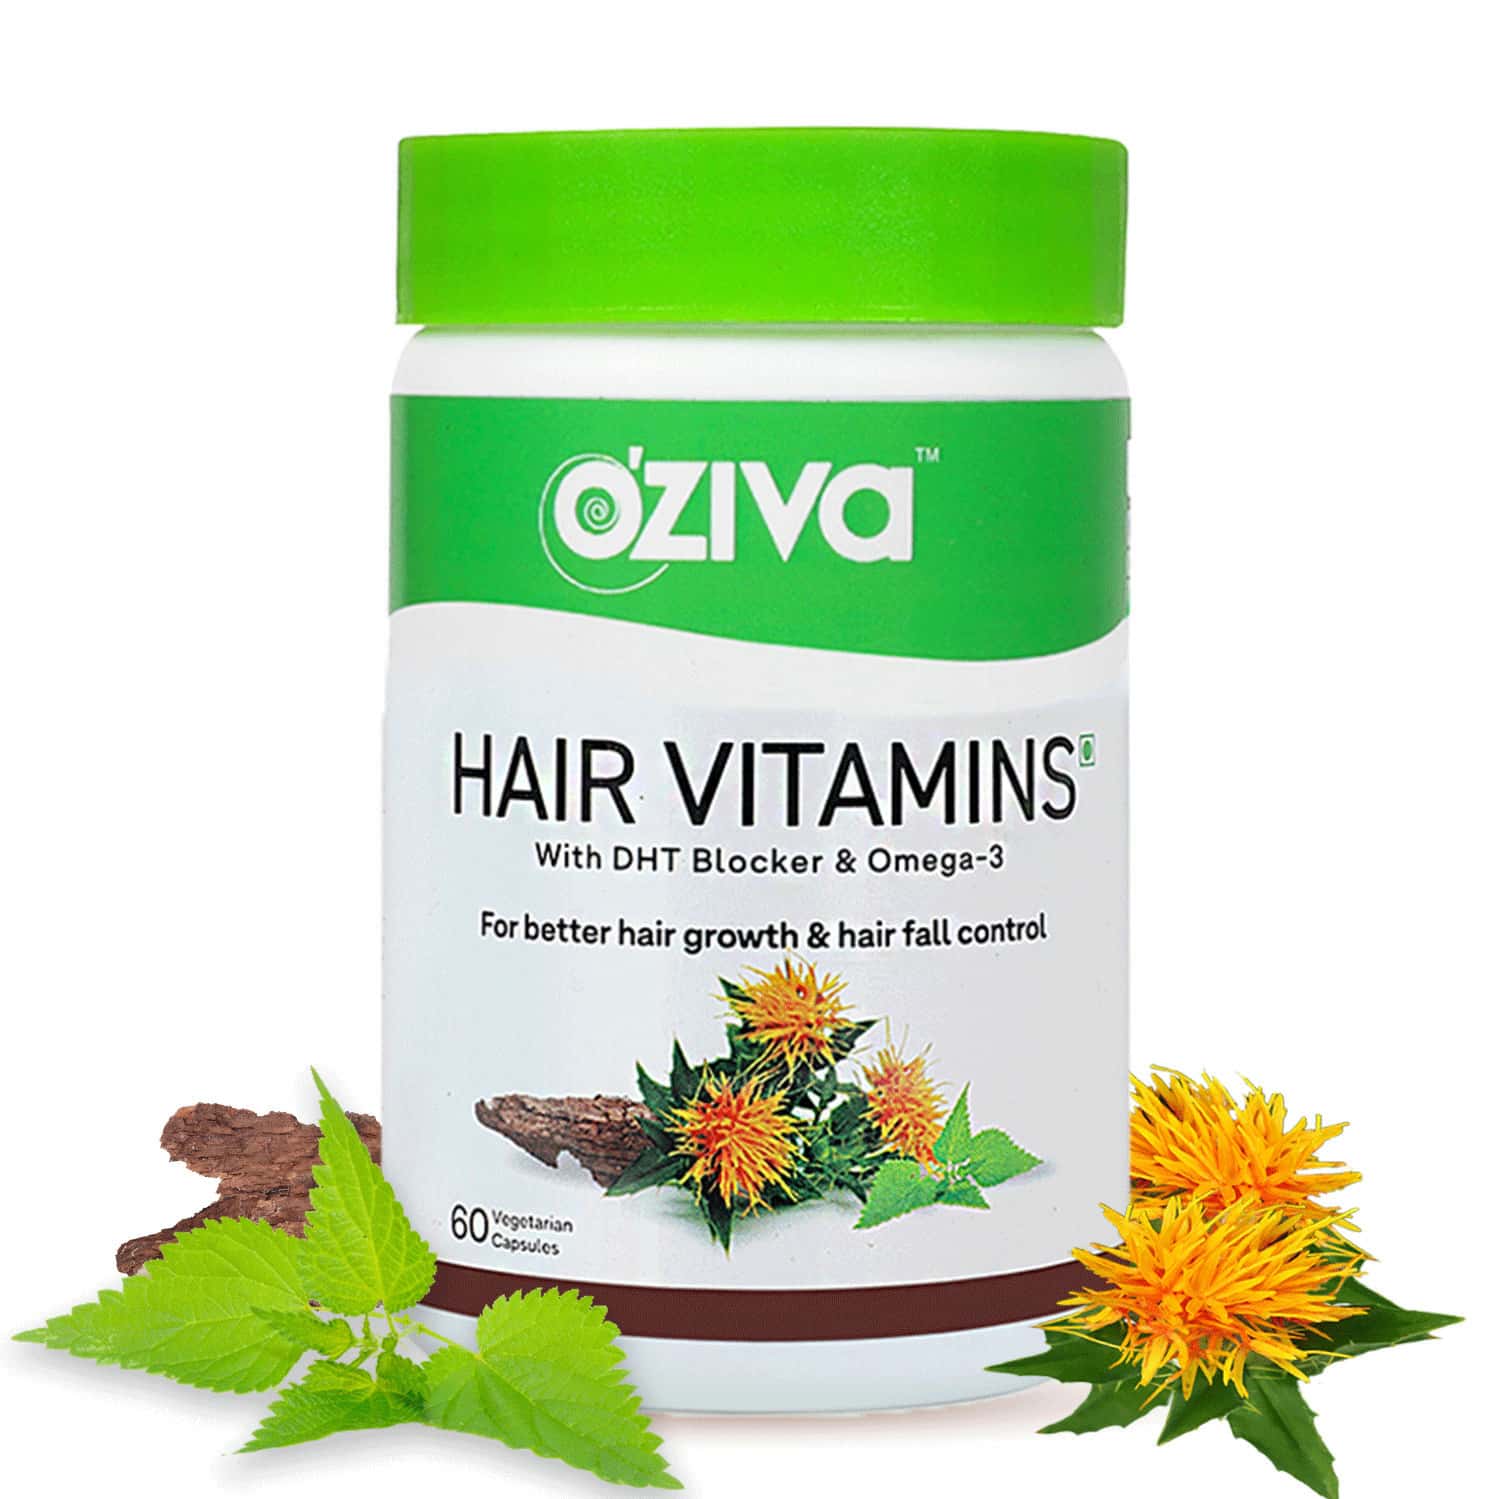 Oziva Plant Based Hair Vitamins 60 Capsules | Hair Vitamins For Hair Growth